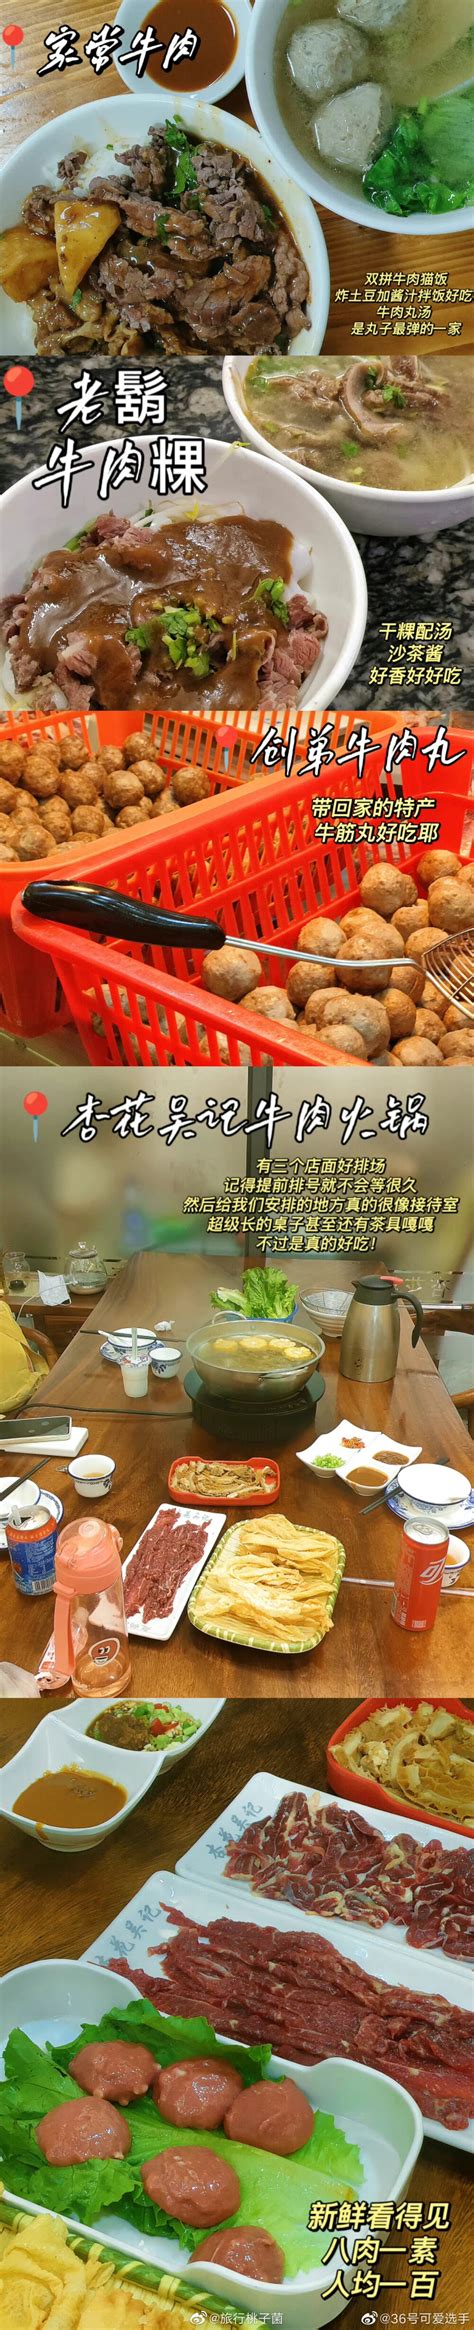 散装批发12.5kg 枇杷干 汕头休闲食品 蜜饯凉果_中科商务网